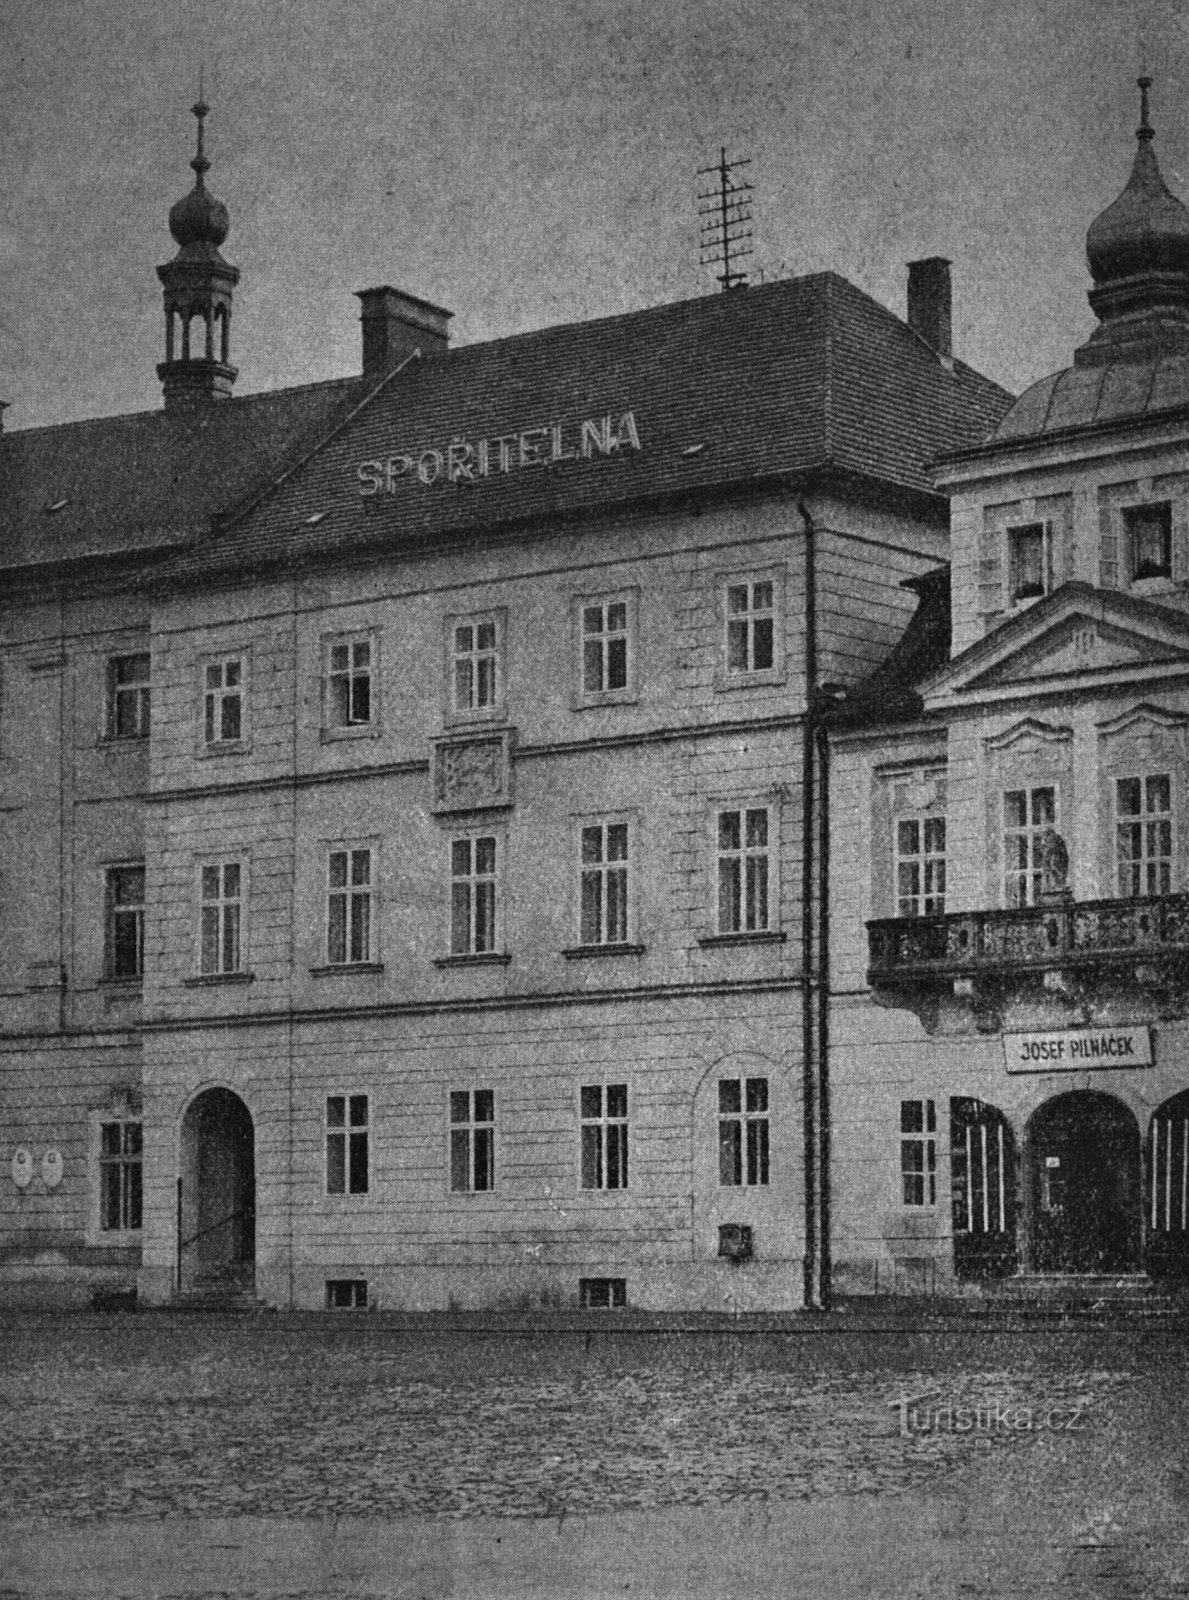 Ταμιευτήριο Královéhradecká στα τέλη της δεκαετίας του 20